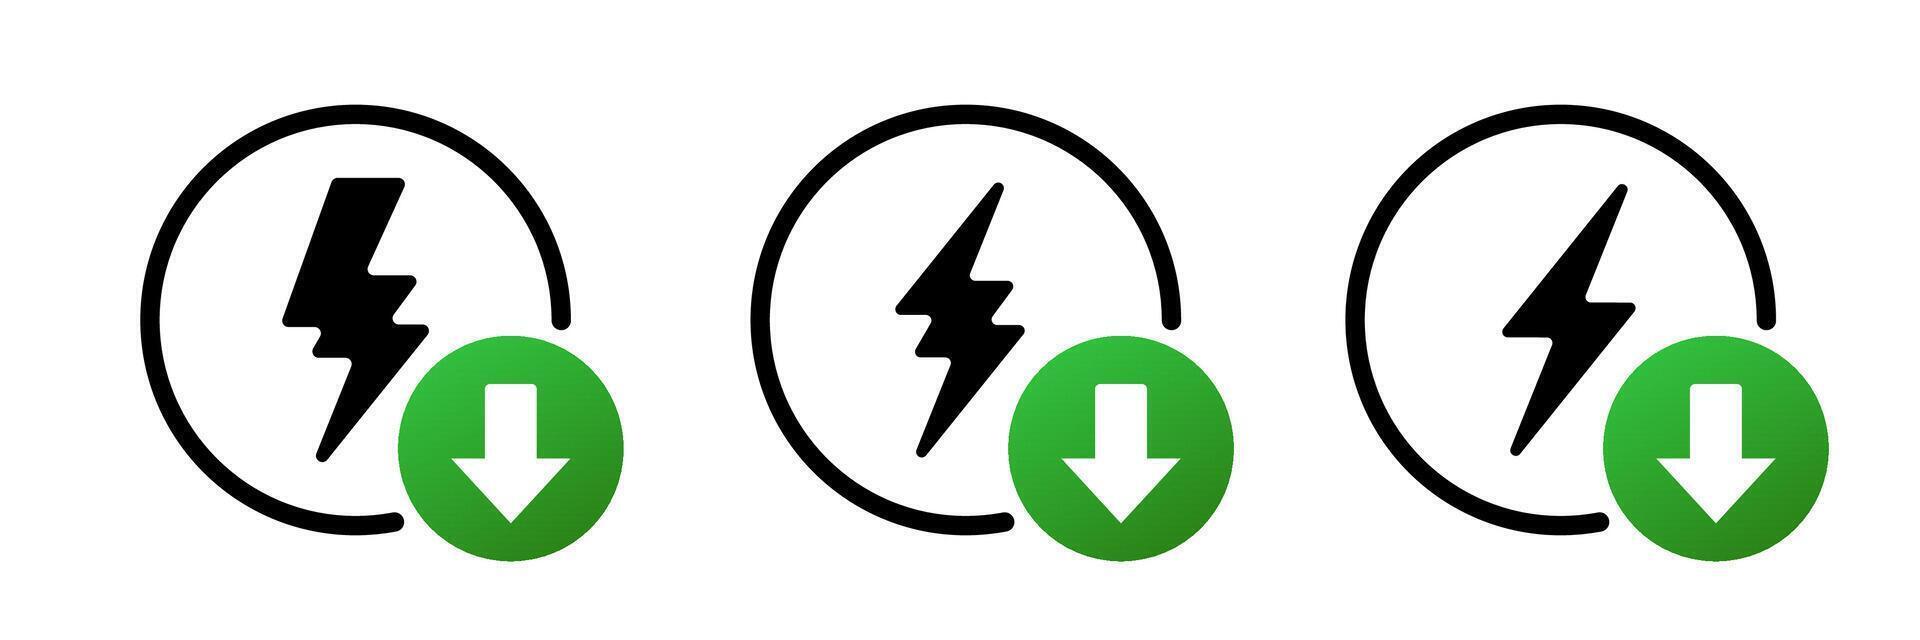 Flash Power Thunderbolt Bolt Logo vector